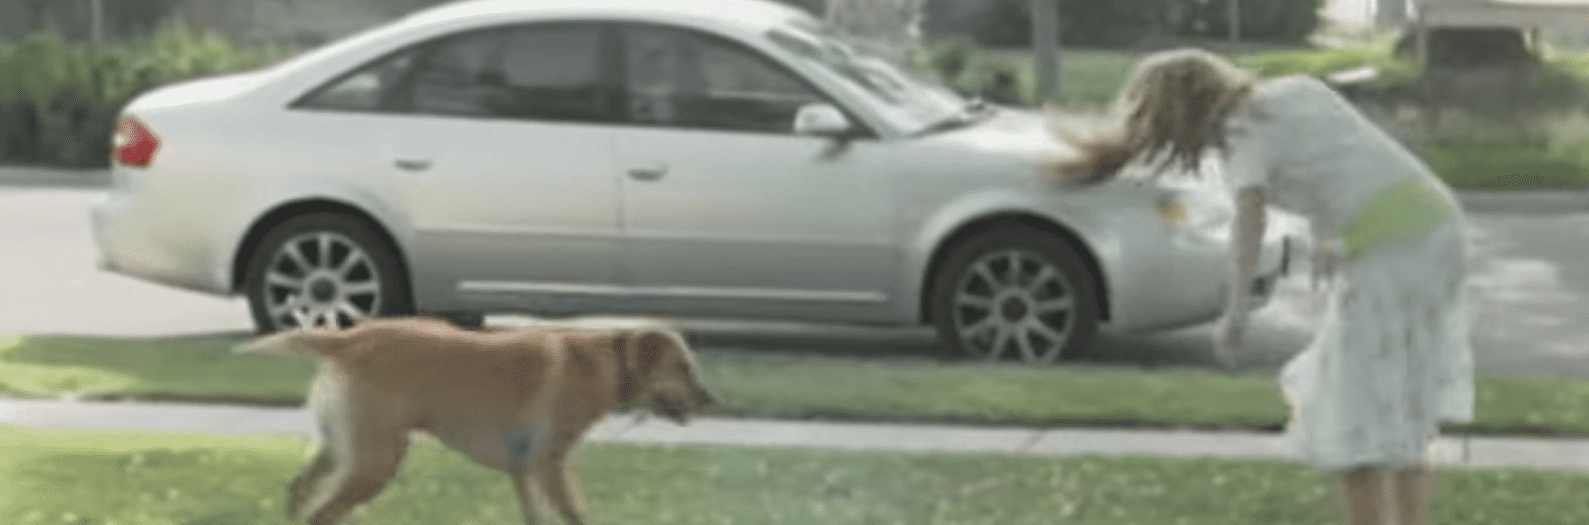 Kaylee spielt draußen mit ihrem Hund. | Quelle: Youtube.com/ABC News